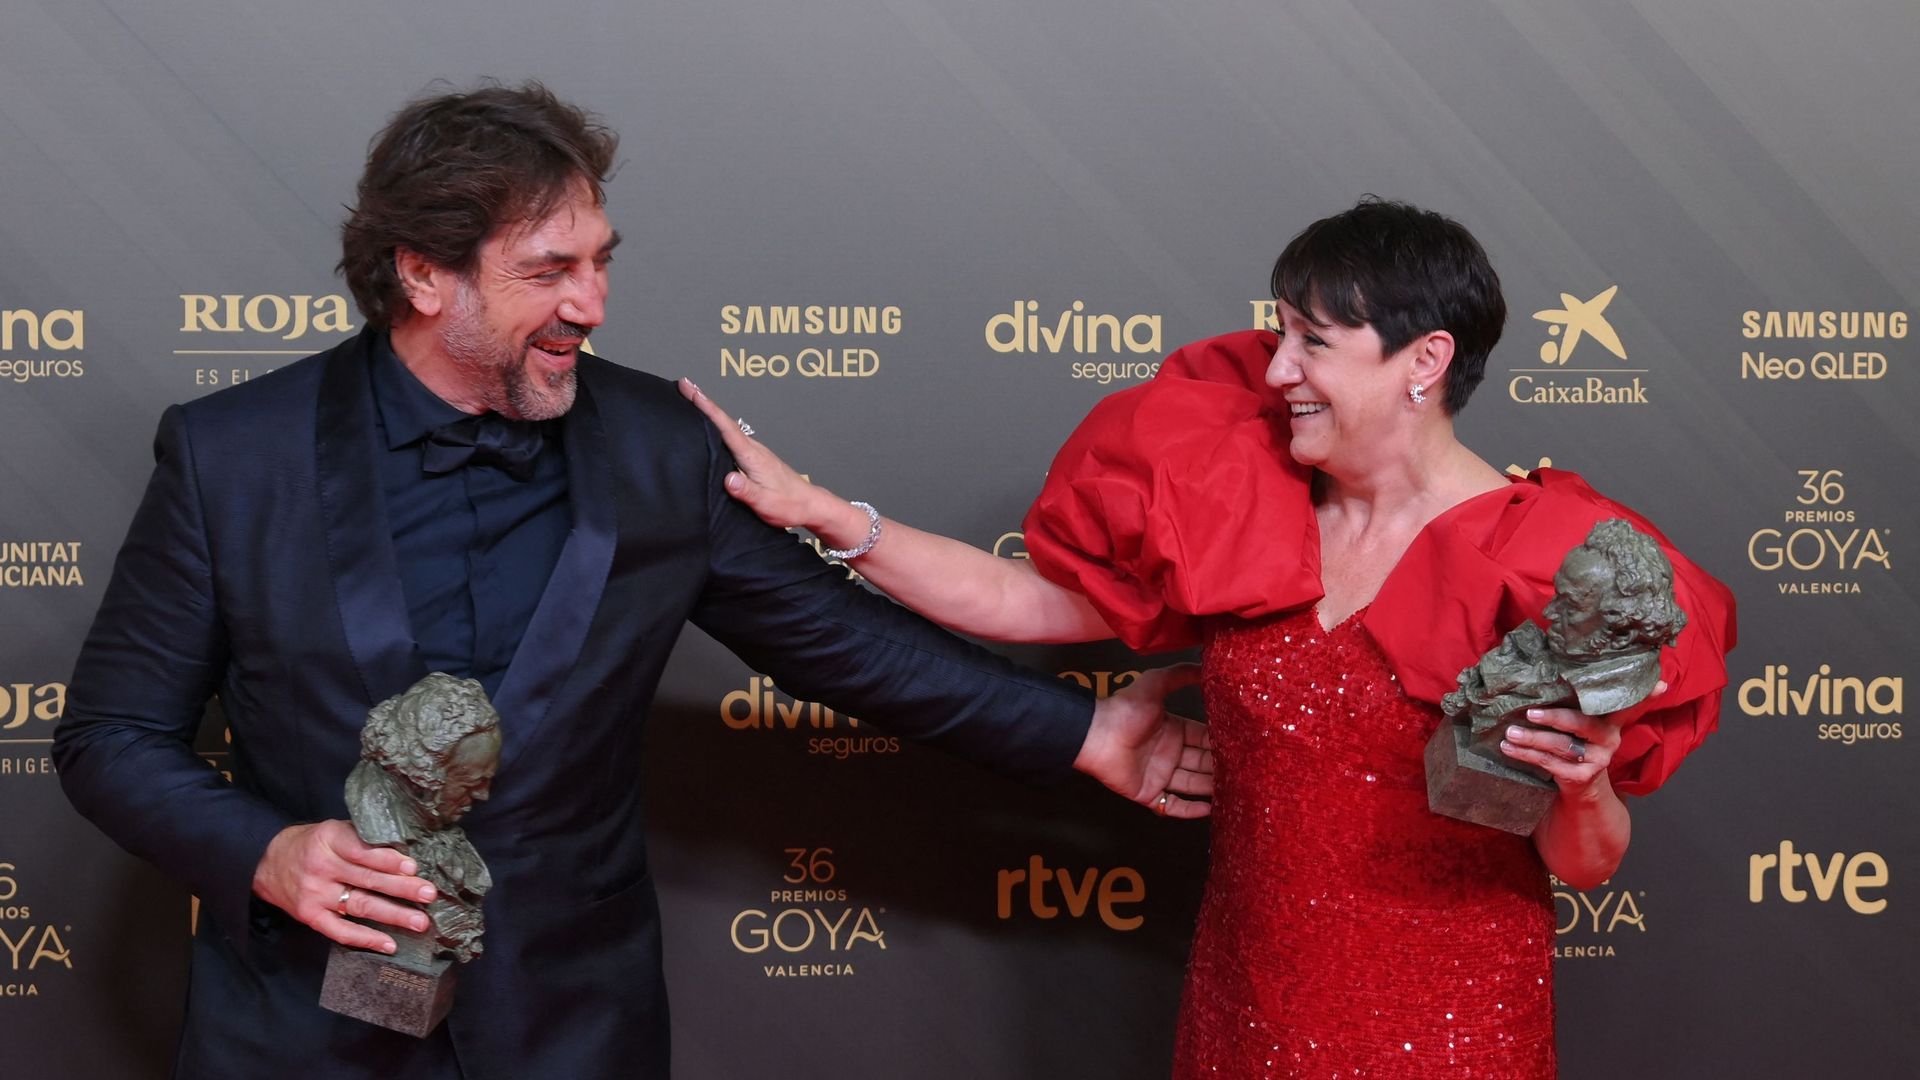 L’acteur espagnol Javier Bardem (à gauche) et l’actrice espagnole Blanca Portillo posent avec leurs prix Goya du meilleur acteur et de la meilleure actrice, lors d’un photocall suivant la 36e cérémonie des prix Goya au Palau des Arts à Valence, le 12 févr